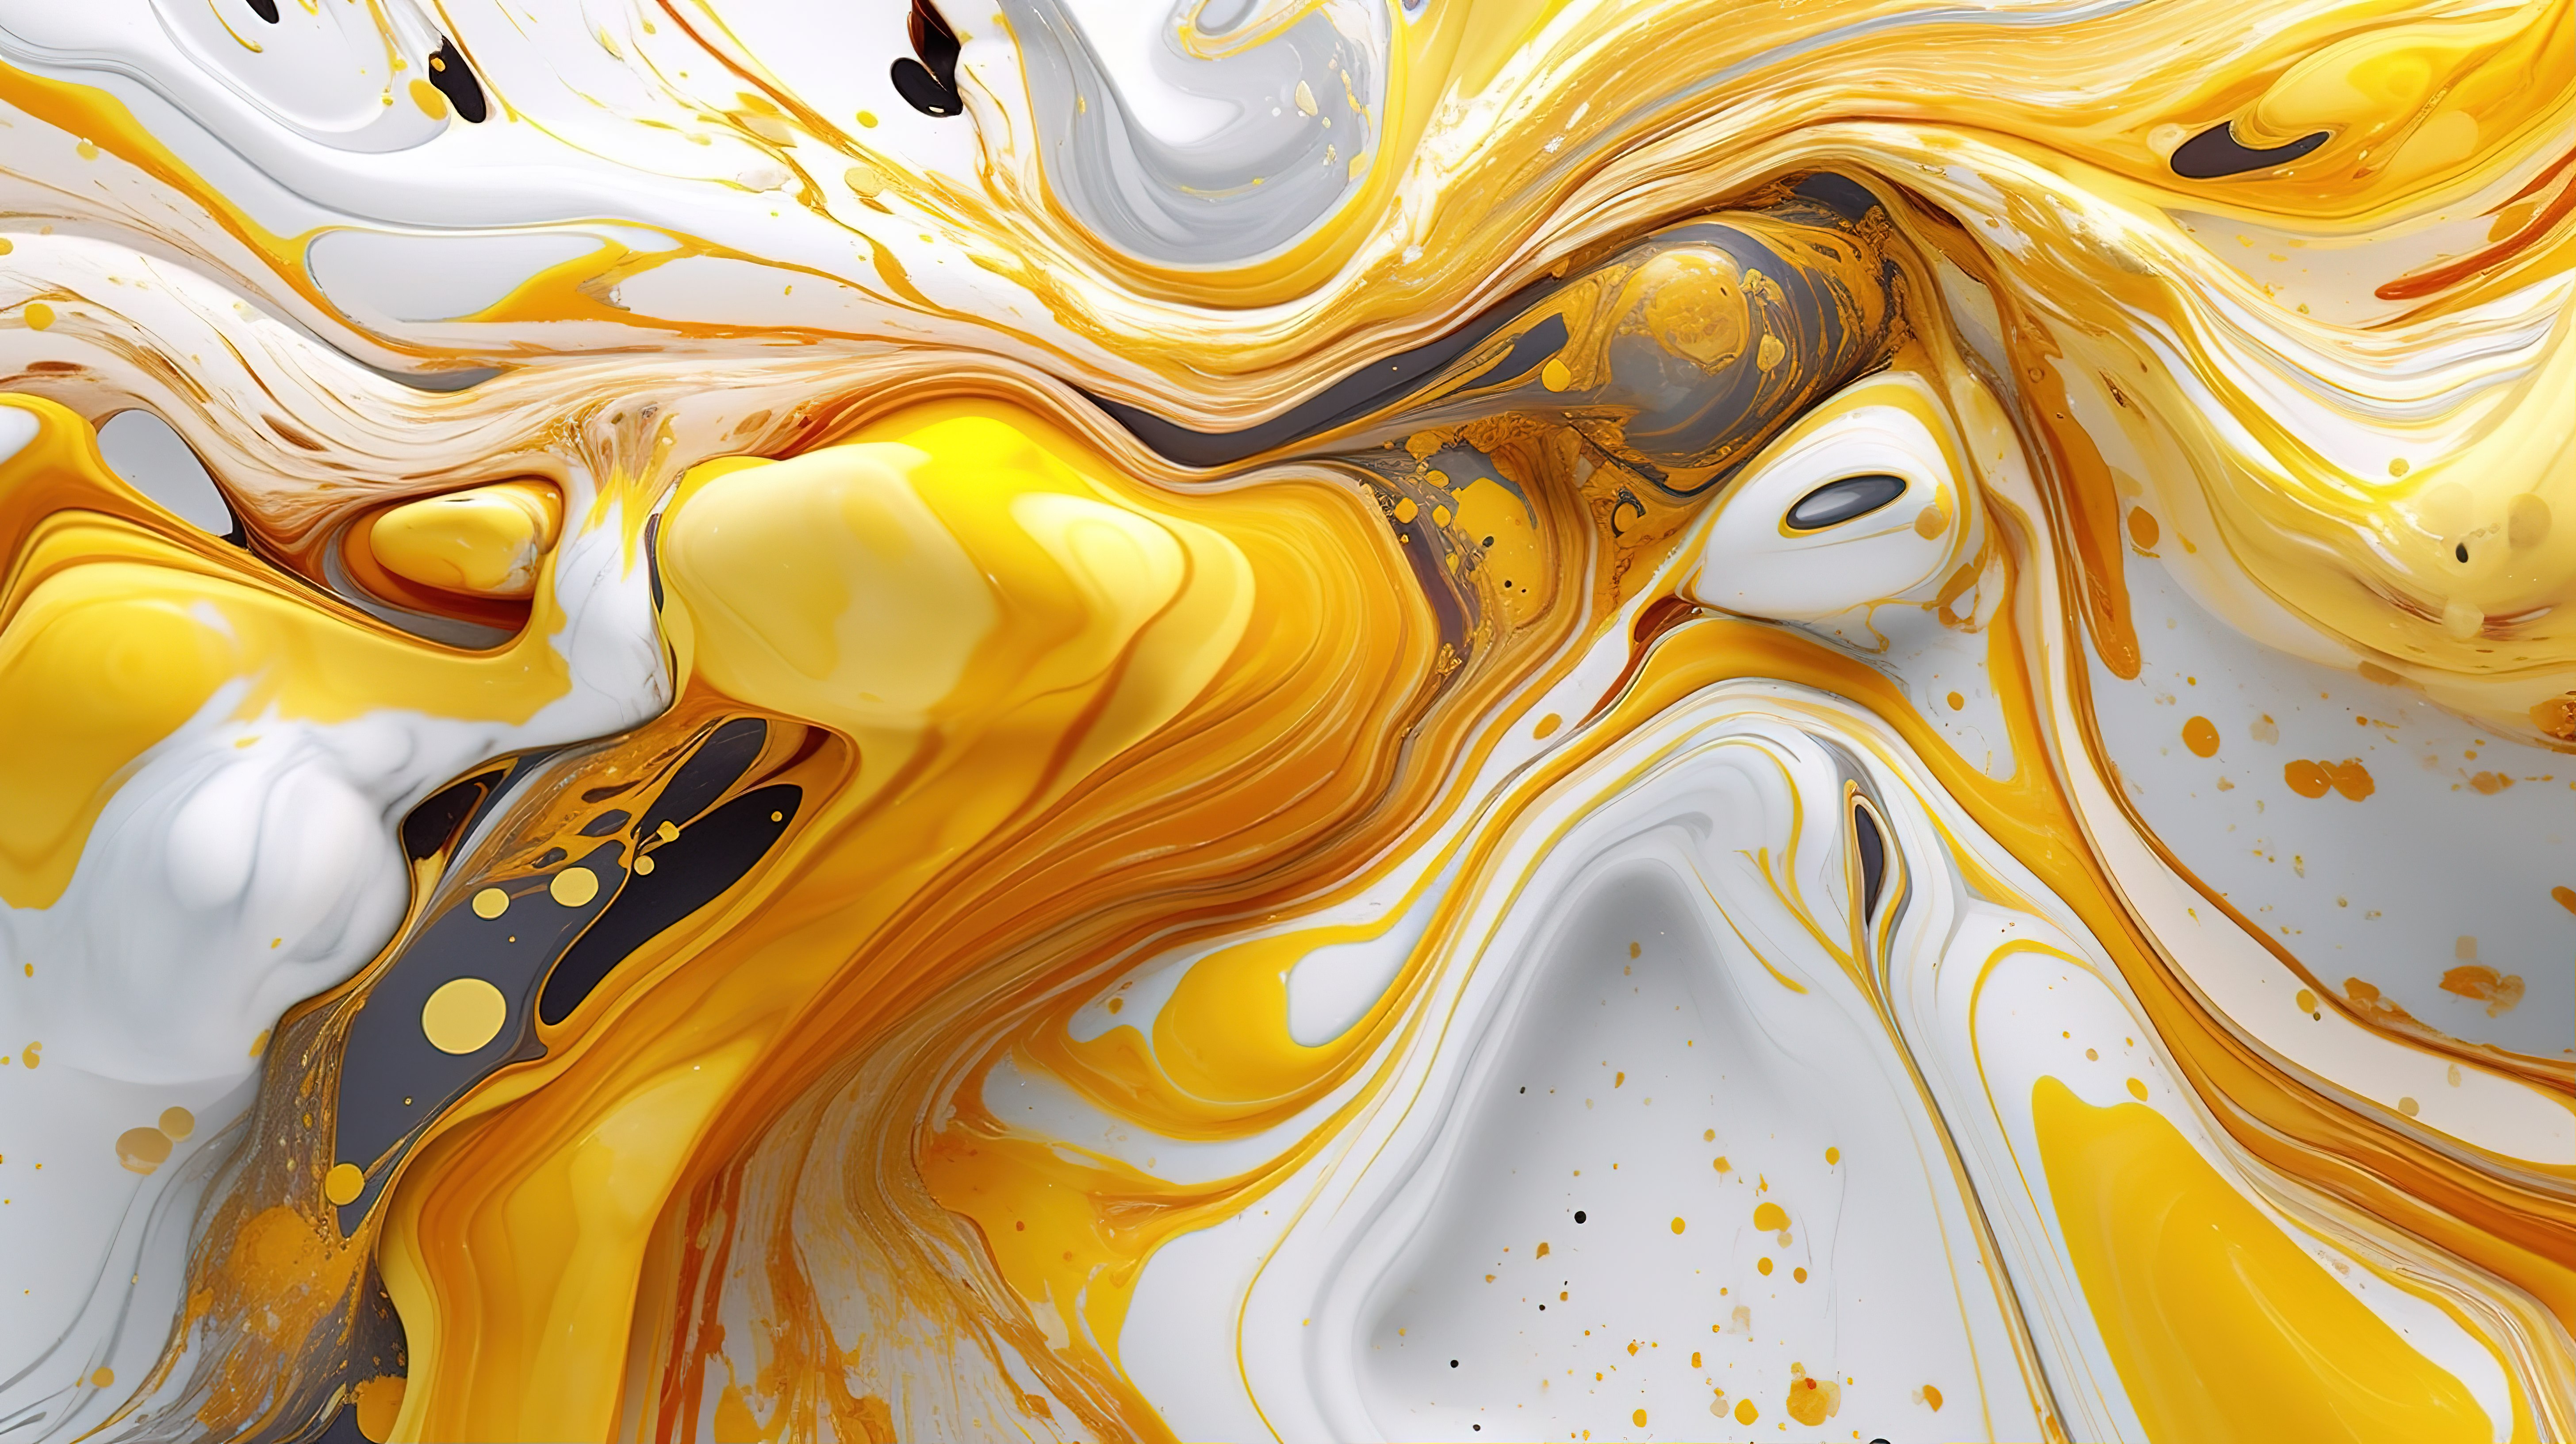 金色和白色图形液体大理石令人惊叹的现代艺术 3D 数字壁纸图片